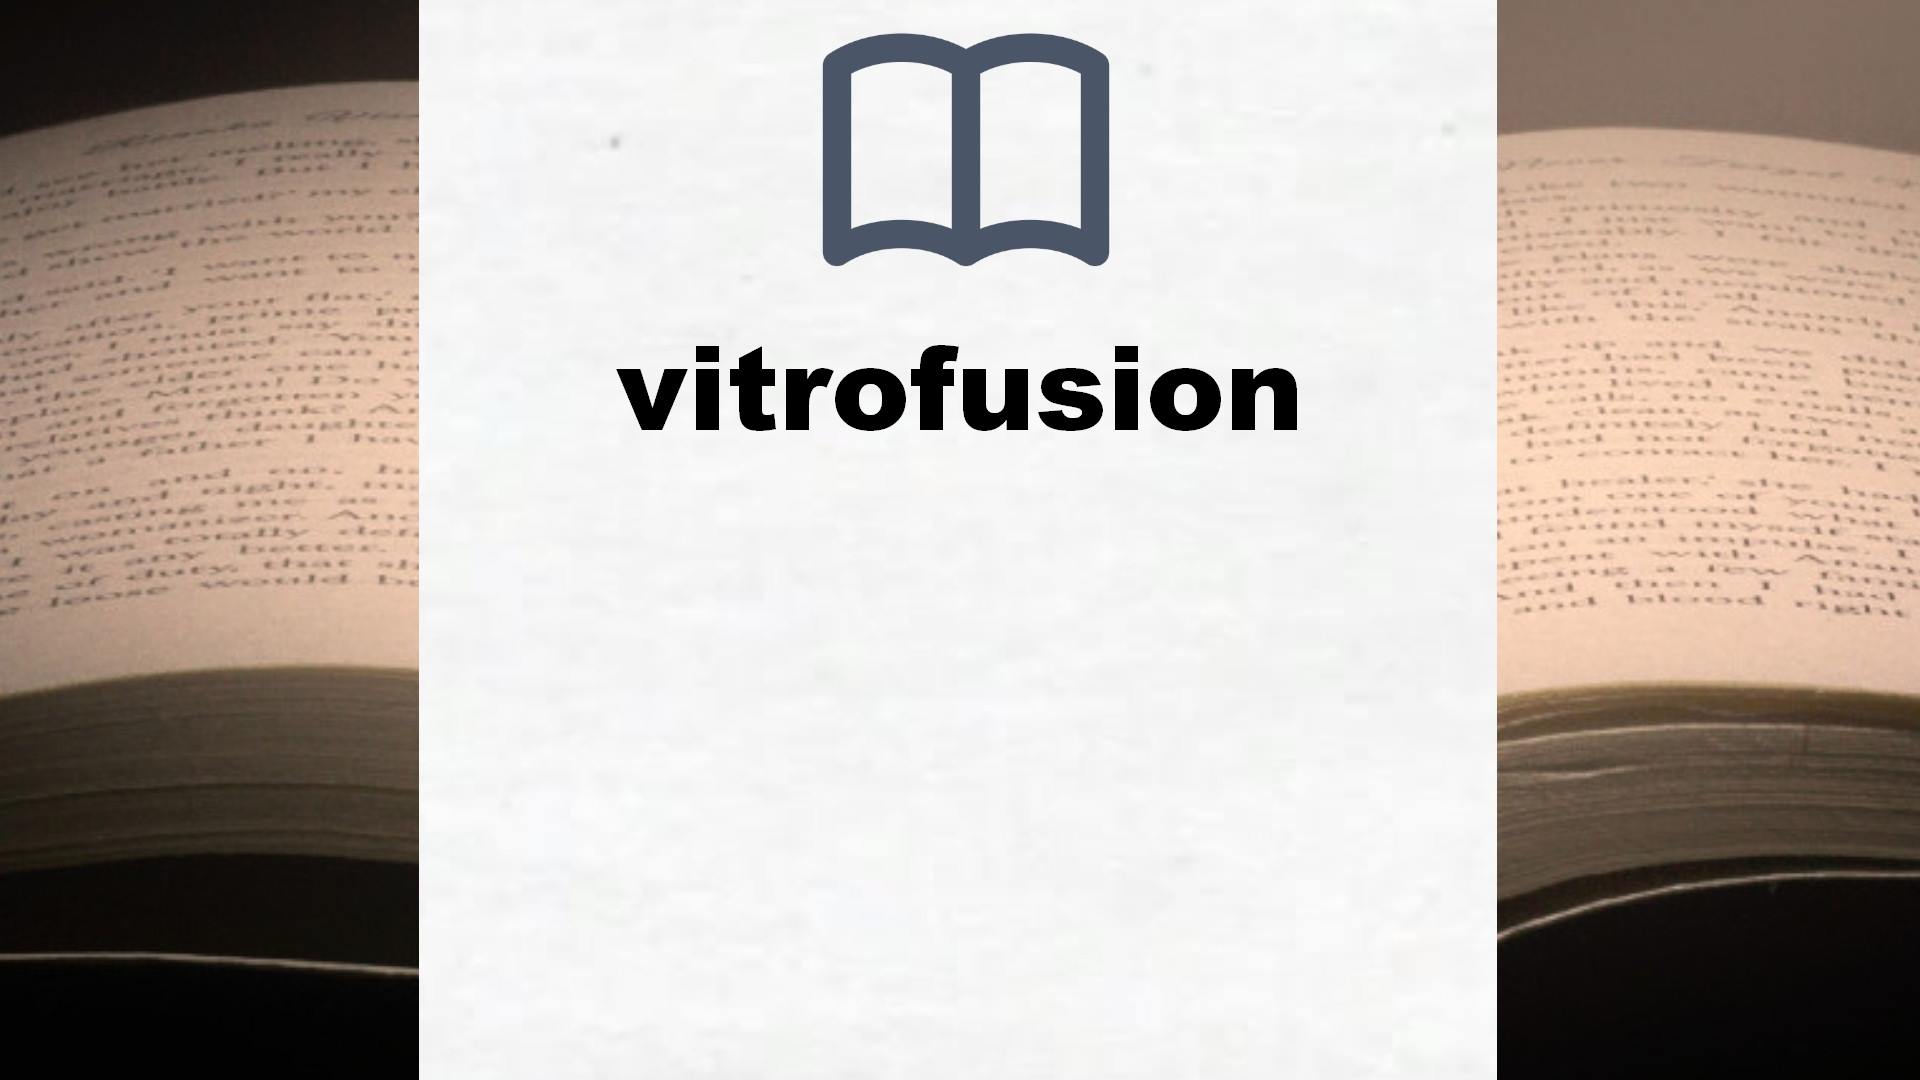 Libros sobre vitrofusion